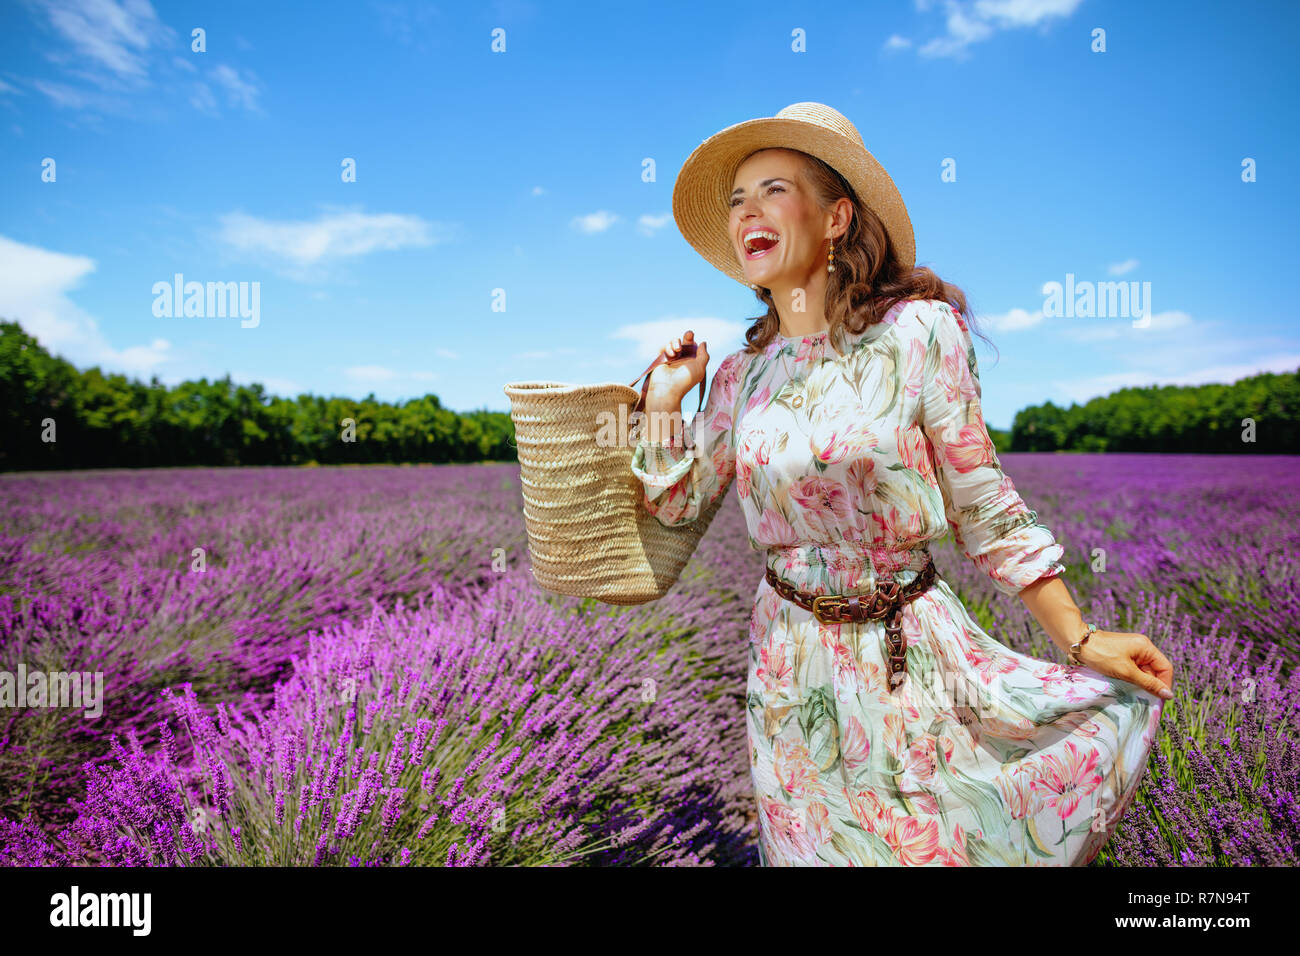 Aufgeregt, elegante Frau mit Stroh Beutel Blick in die Ferne in lavendelfeld in der Provence, Frankreich. Frau mit Picknick Tasche weg weg von der Stockfoto